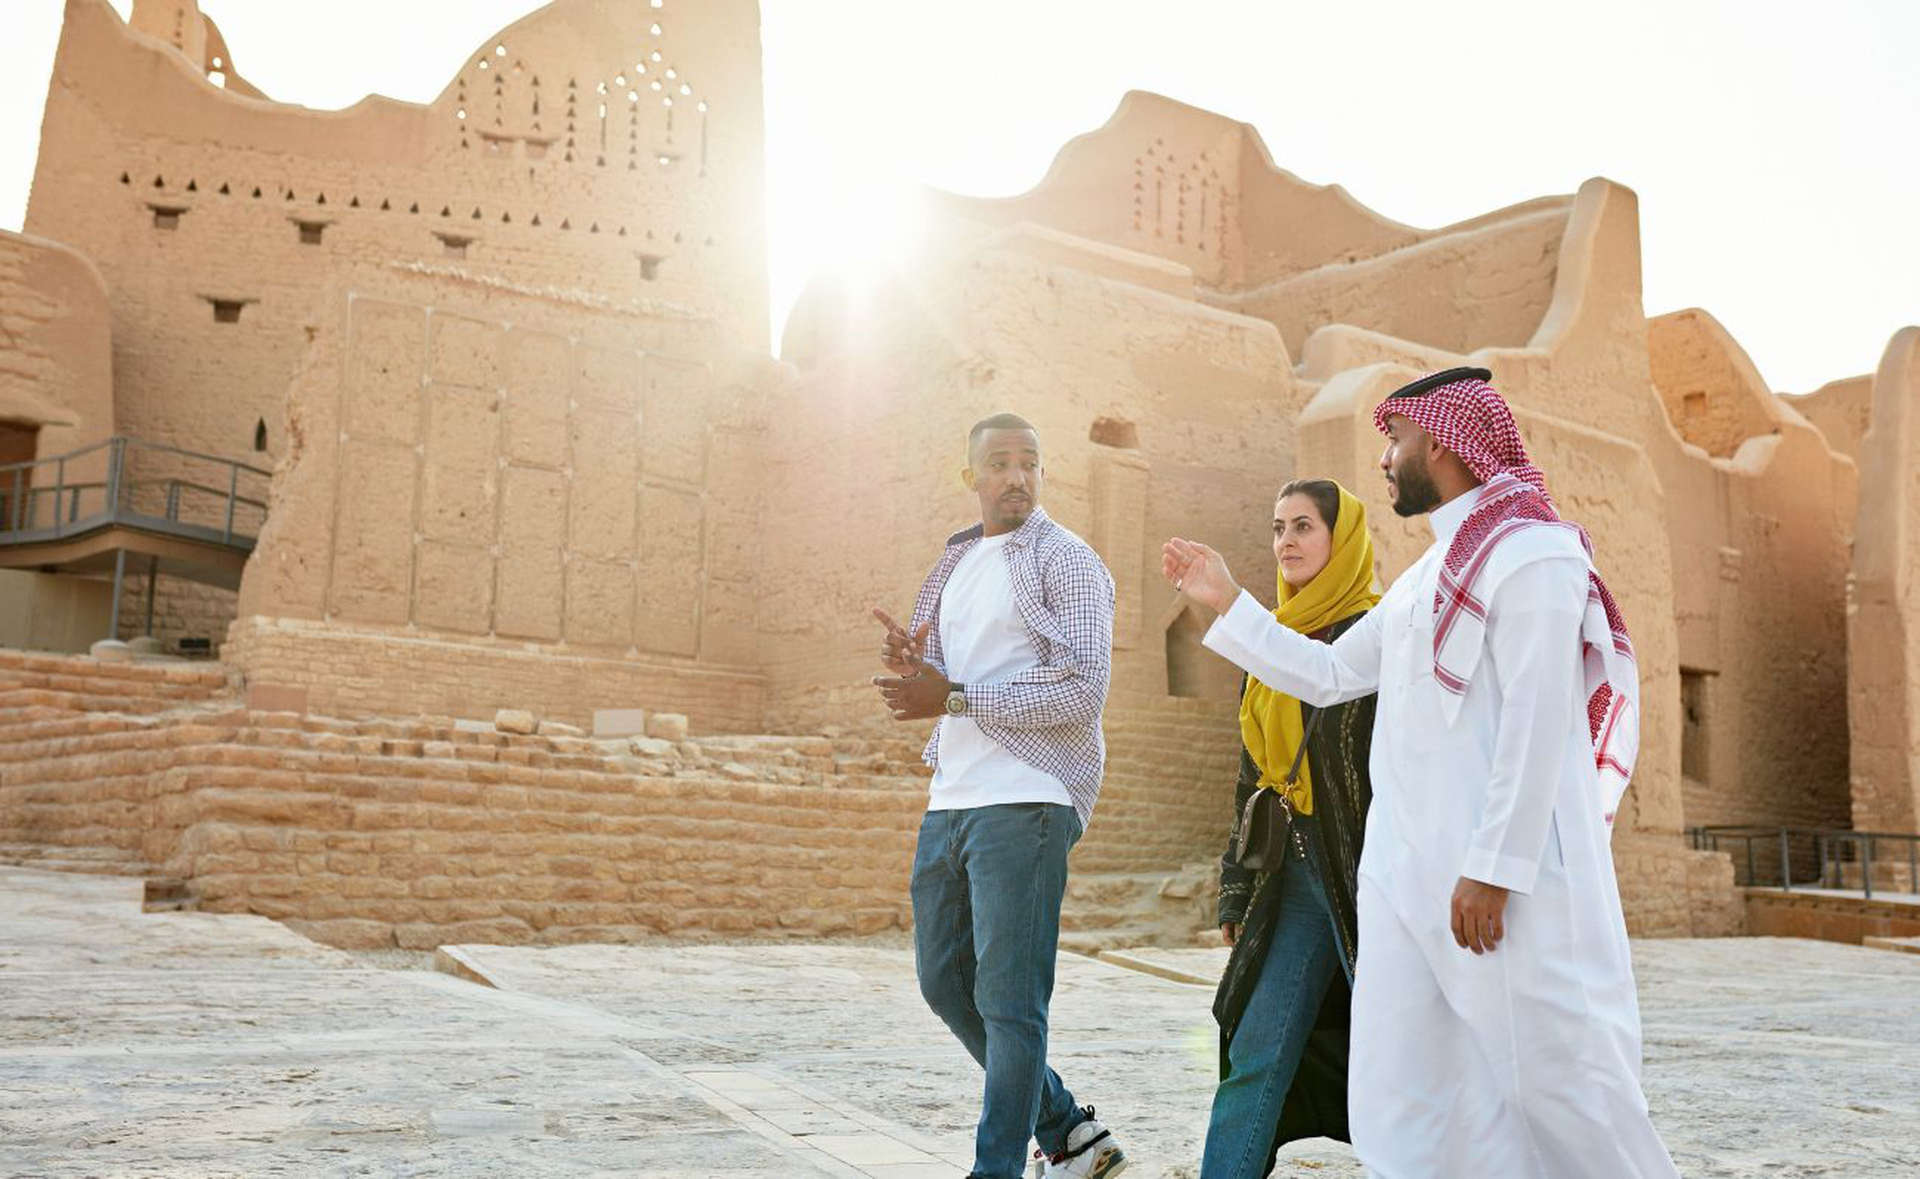 Ammirate le bellezze architettoniche tradizionali dell’Arabia Saudita